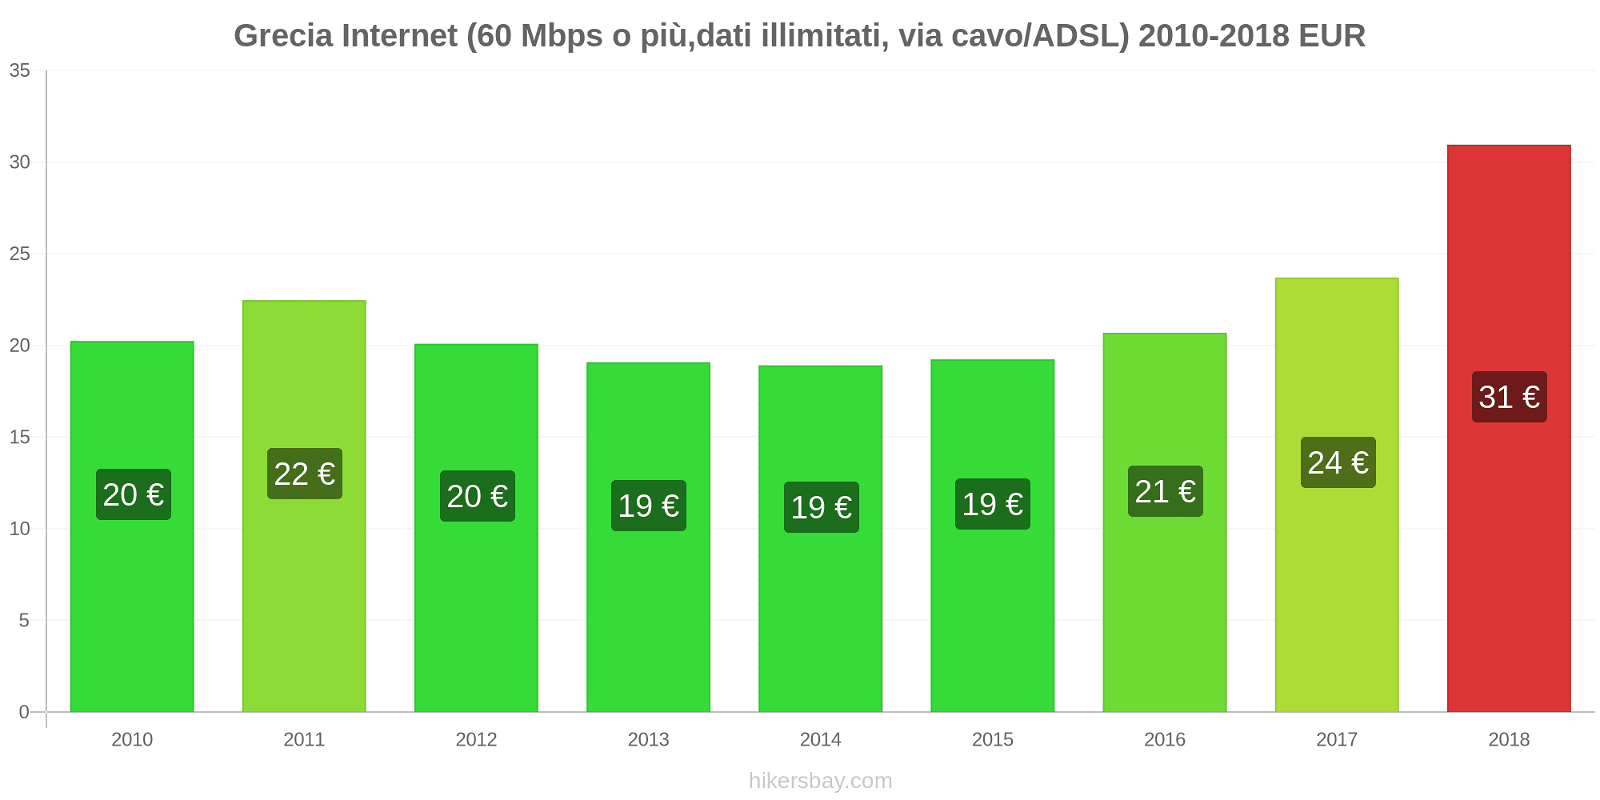 Grecia cambi di prezzo Internet (60 Mbps o più, dati illimitati, cavo/ADSL) hikersbay.com